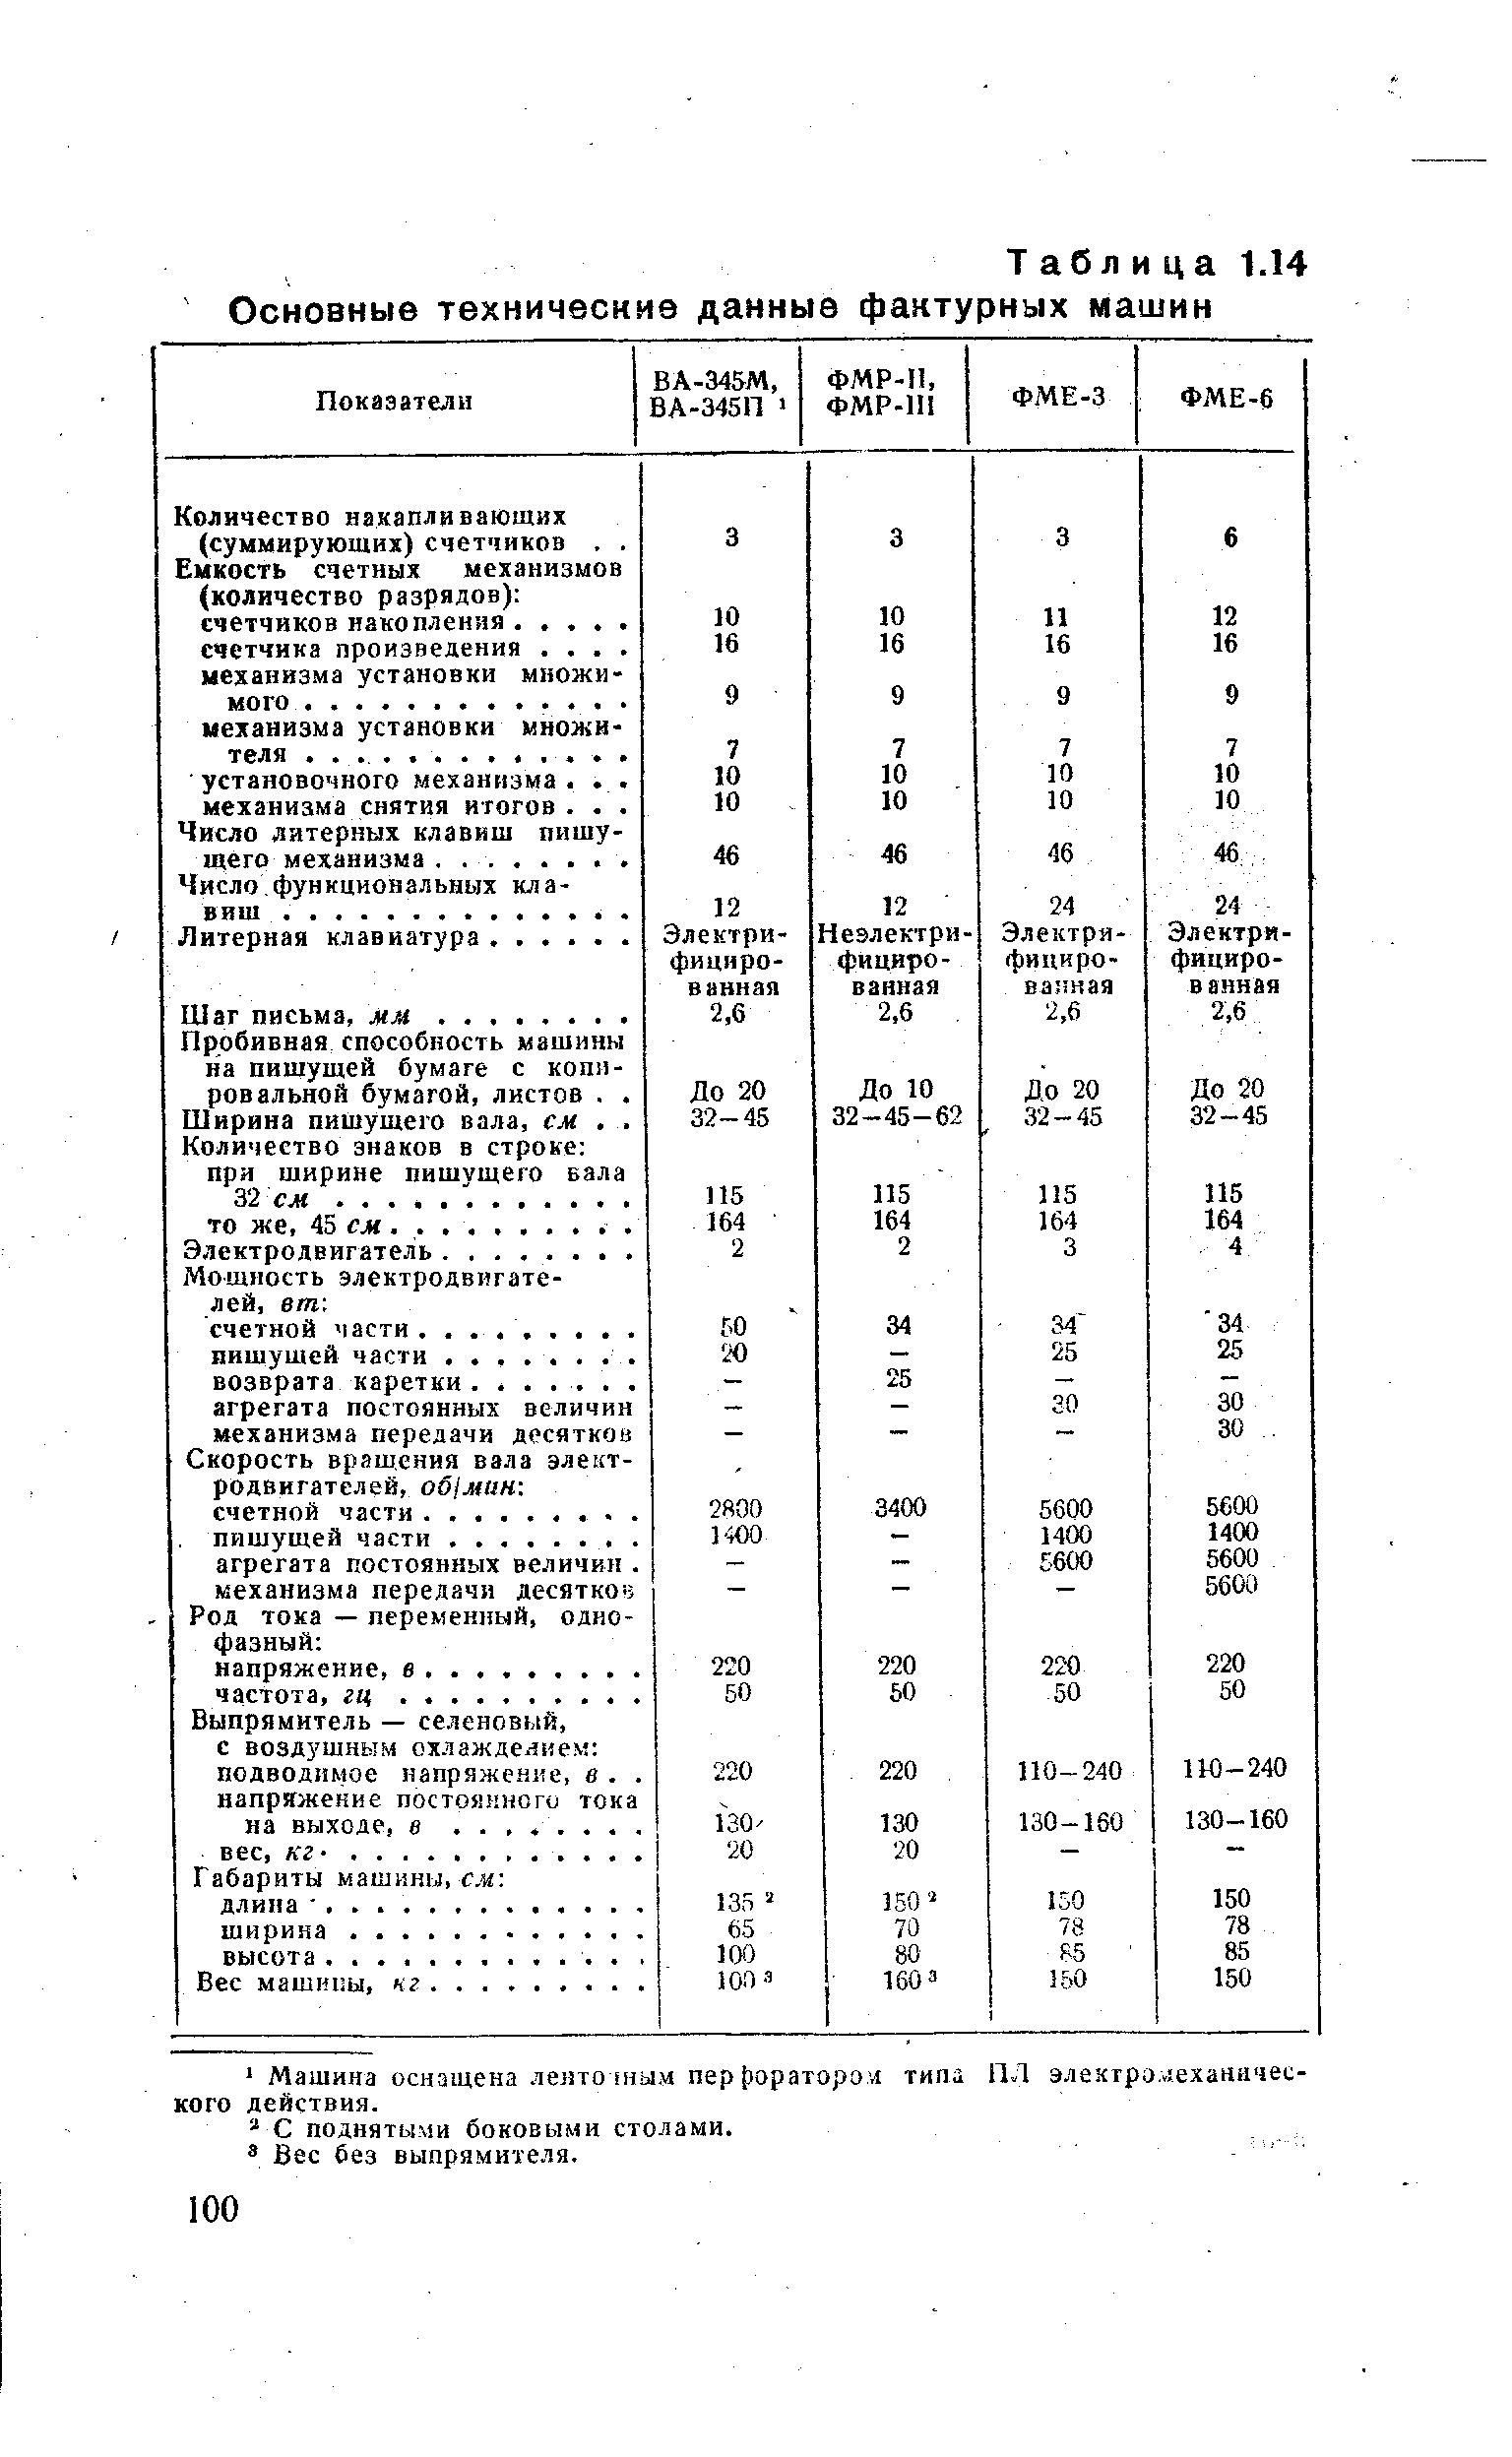 Таблица 1Л4 Основные технические данные фактурных машин
